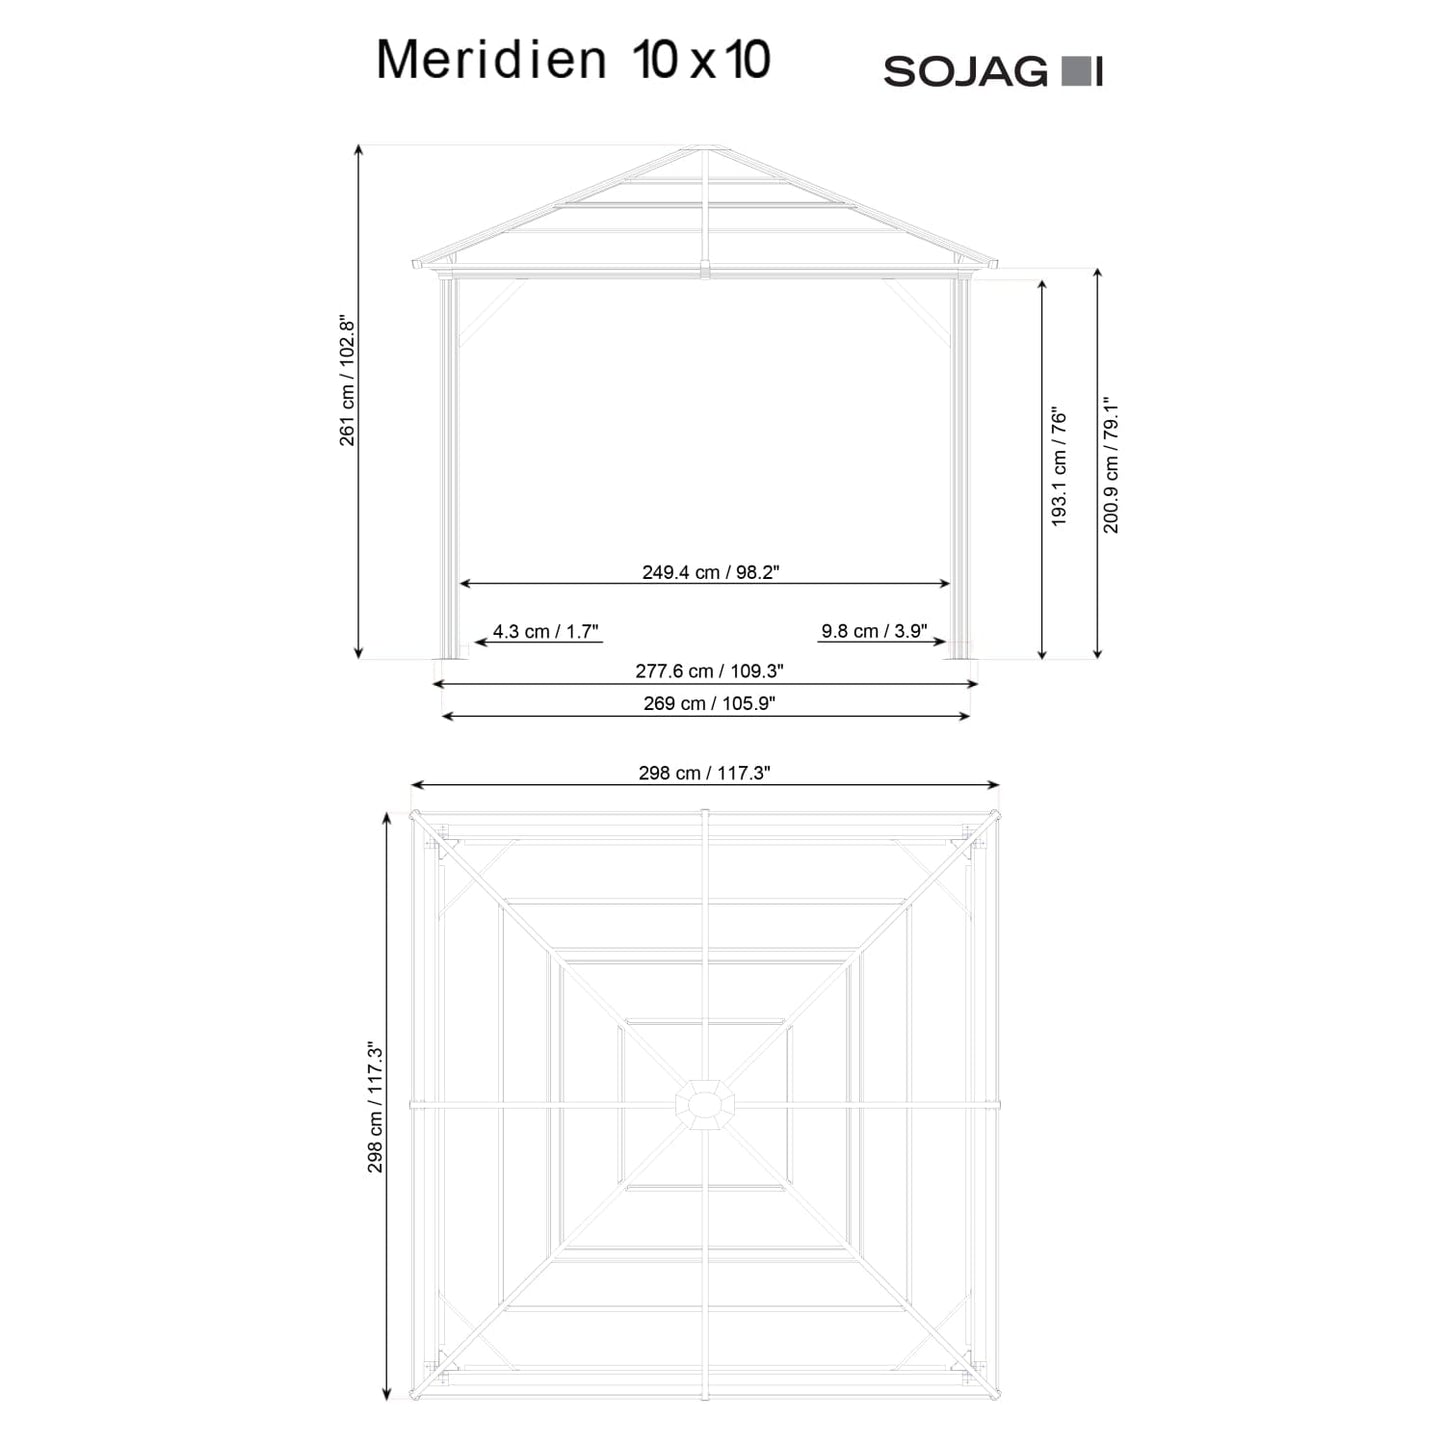 SOJAG Gazebo Sojag | Meridien 10 ft. x 10 ft. Gazebo - Charcoal 500-9168389